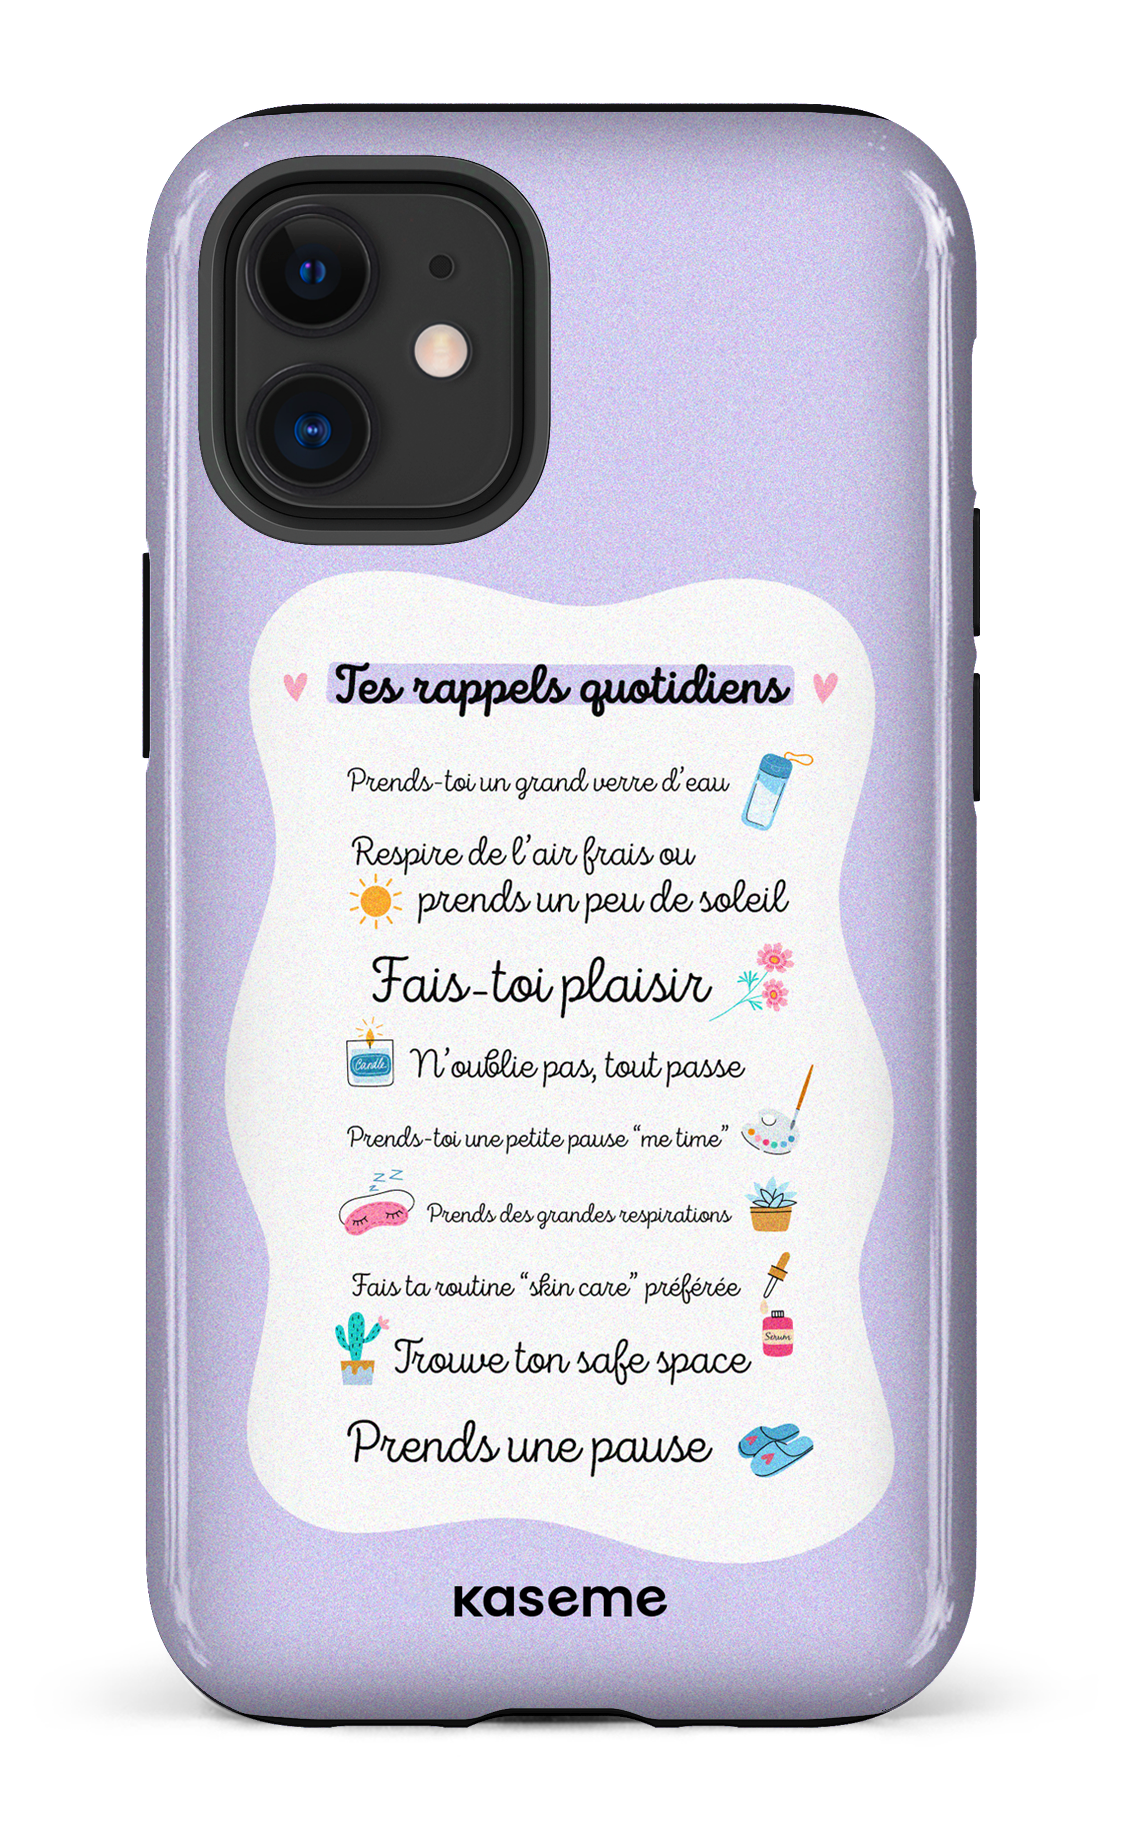 Tes rappels quotidiens purple - iPhone 12 Mini